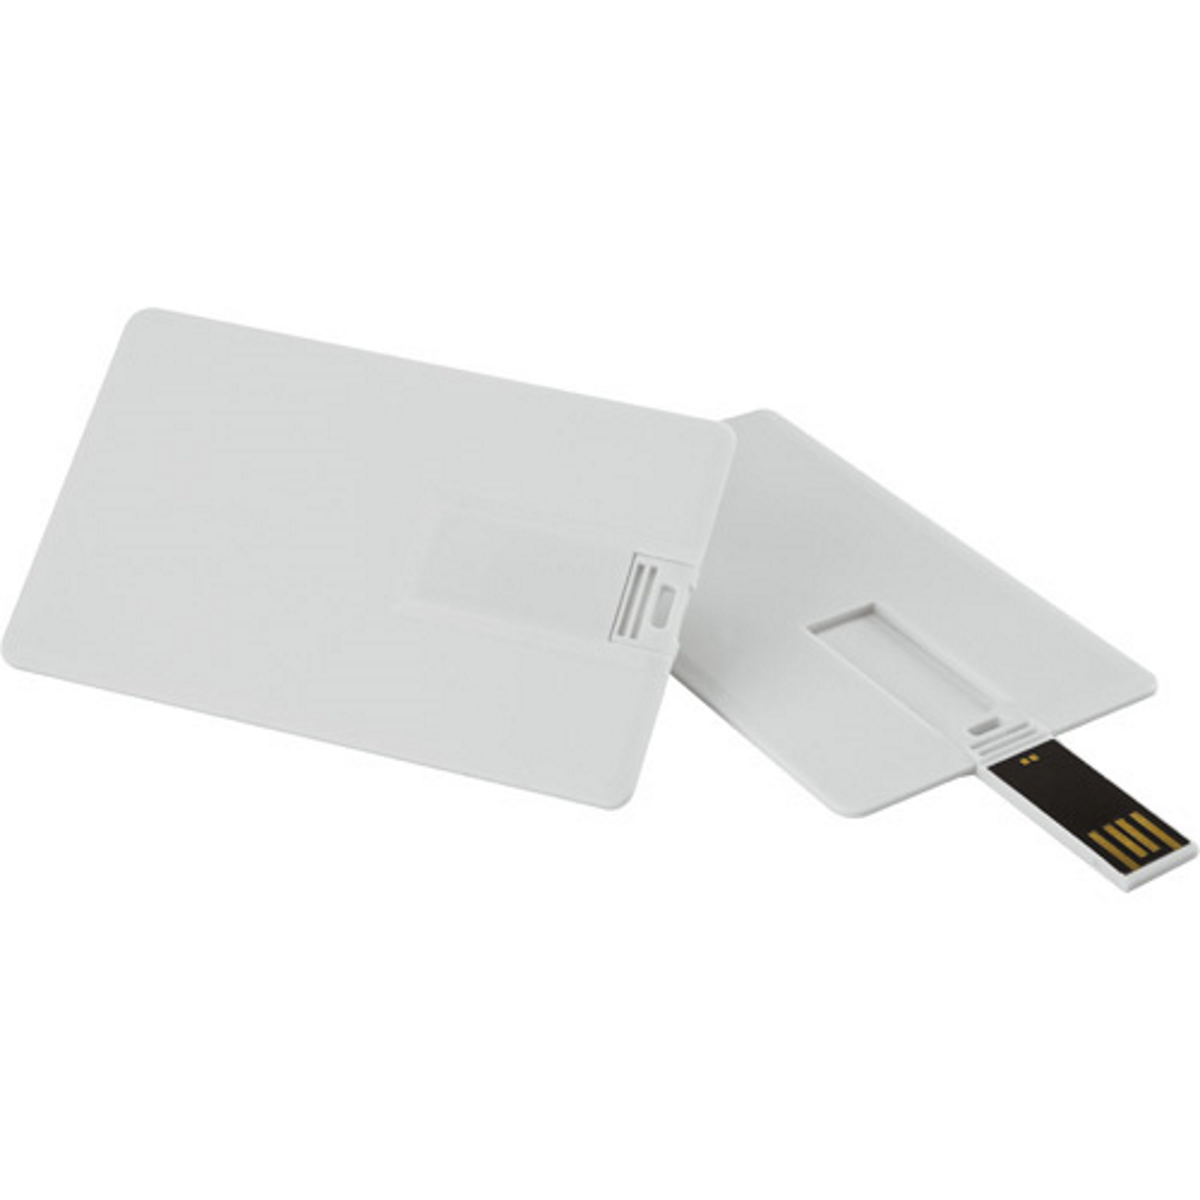 GERMANY USB Kreditkarte ® GB) 16 (Weiss, USB-Stick